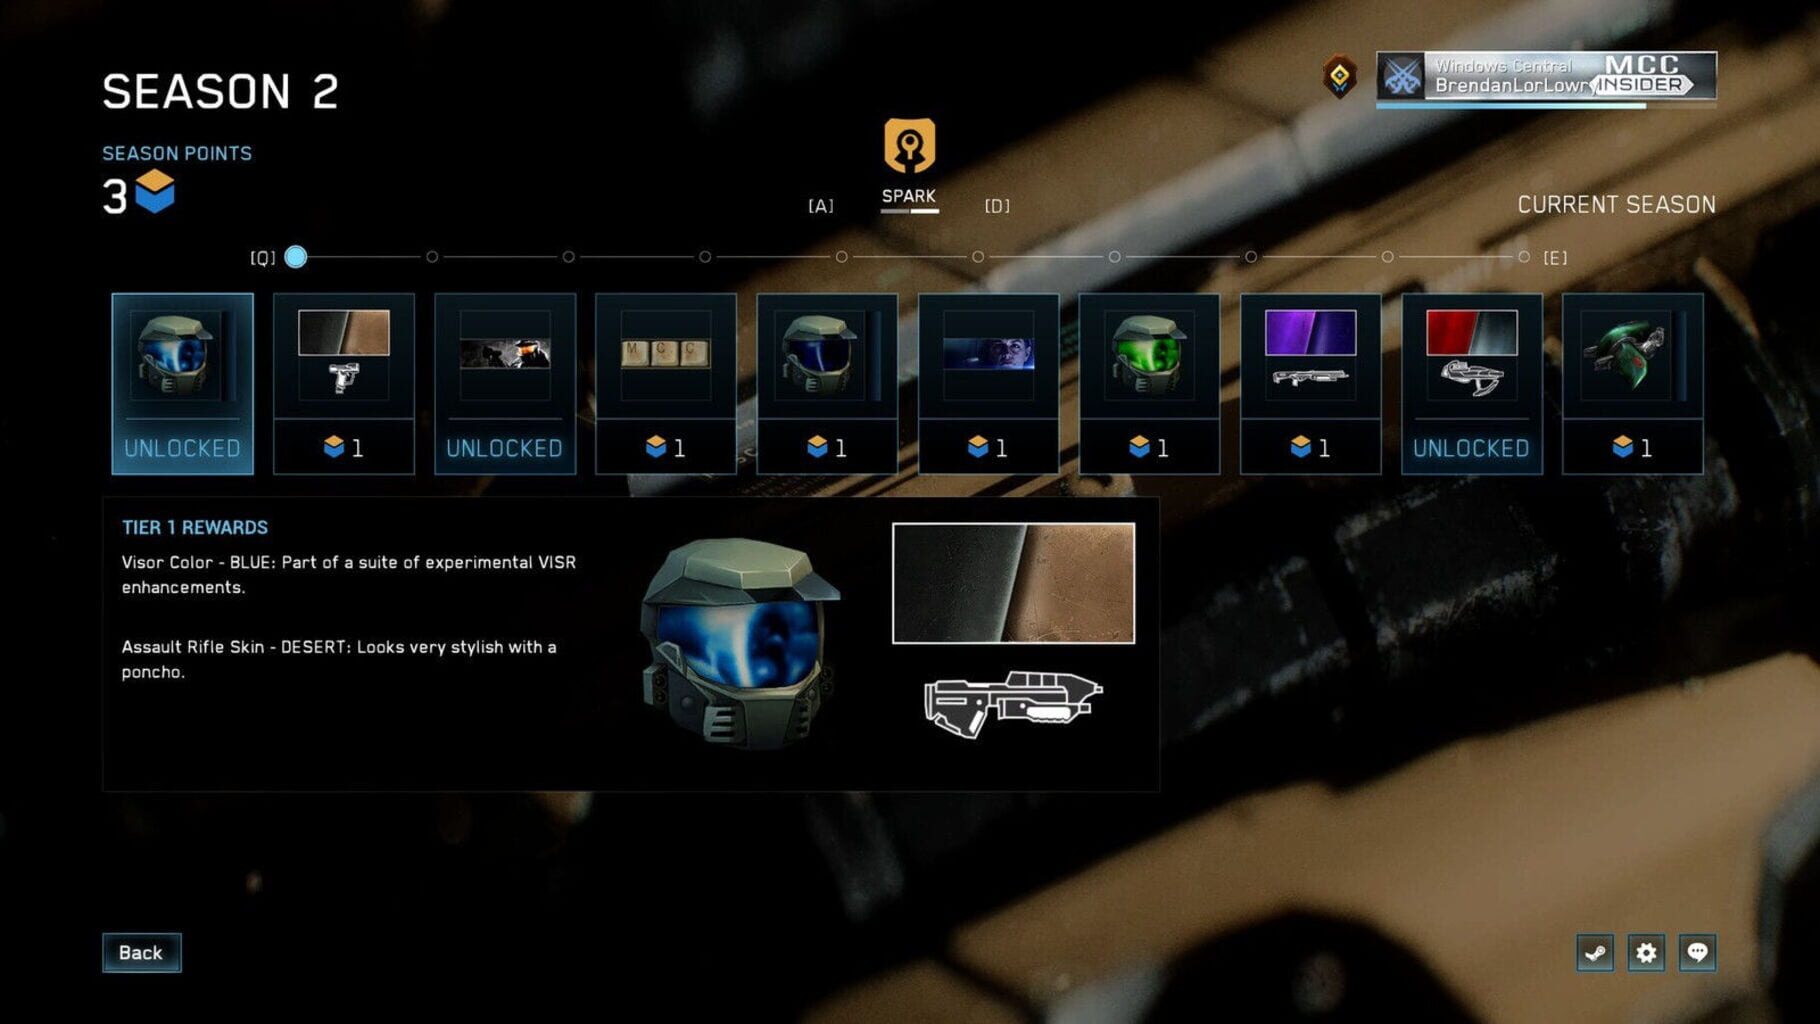 Captura de pantalla - Halo: The Master Chief Collection Season 2 - Spark